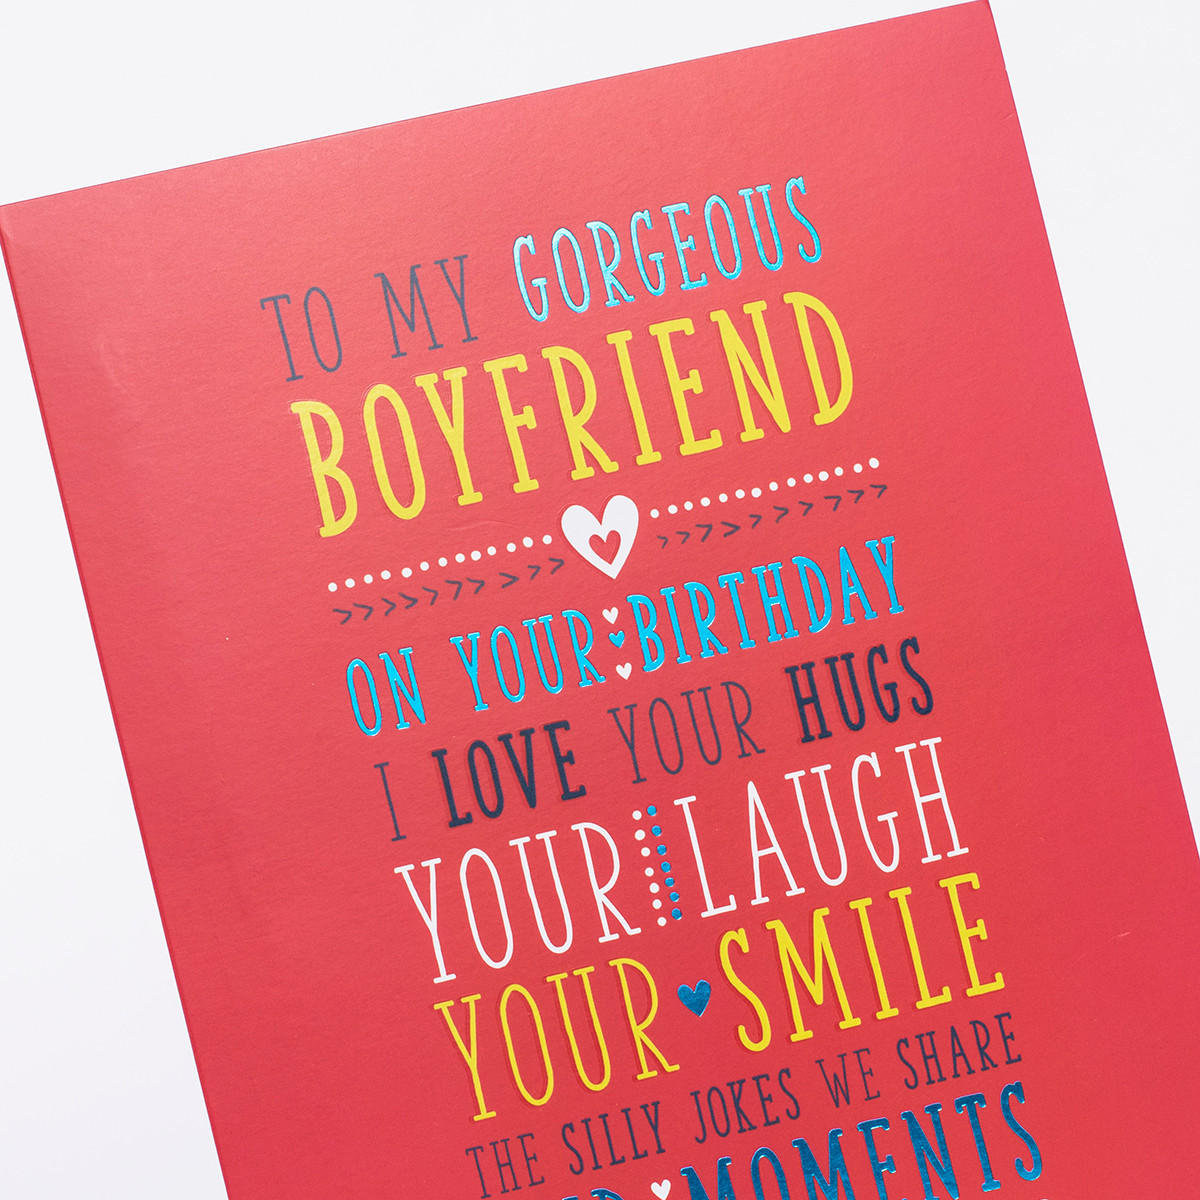 Birthday Card For Boyfriend
 Birthday Card For My Boyfriend